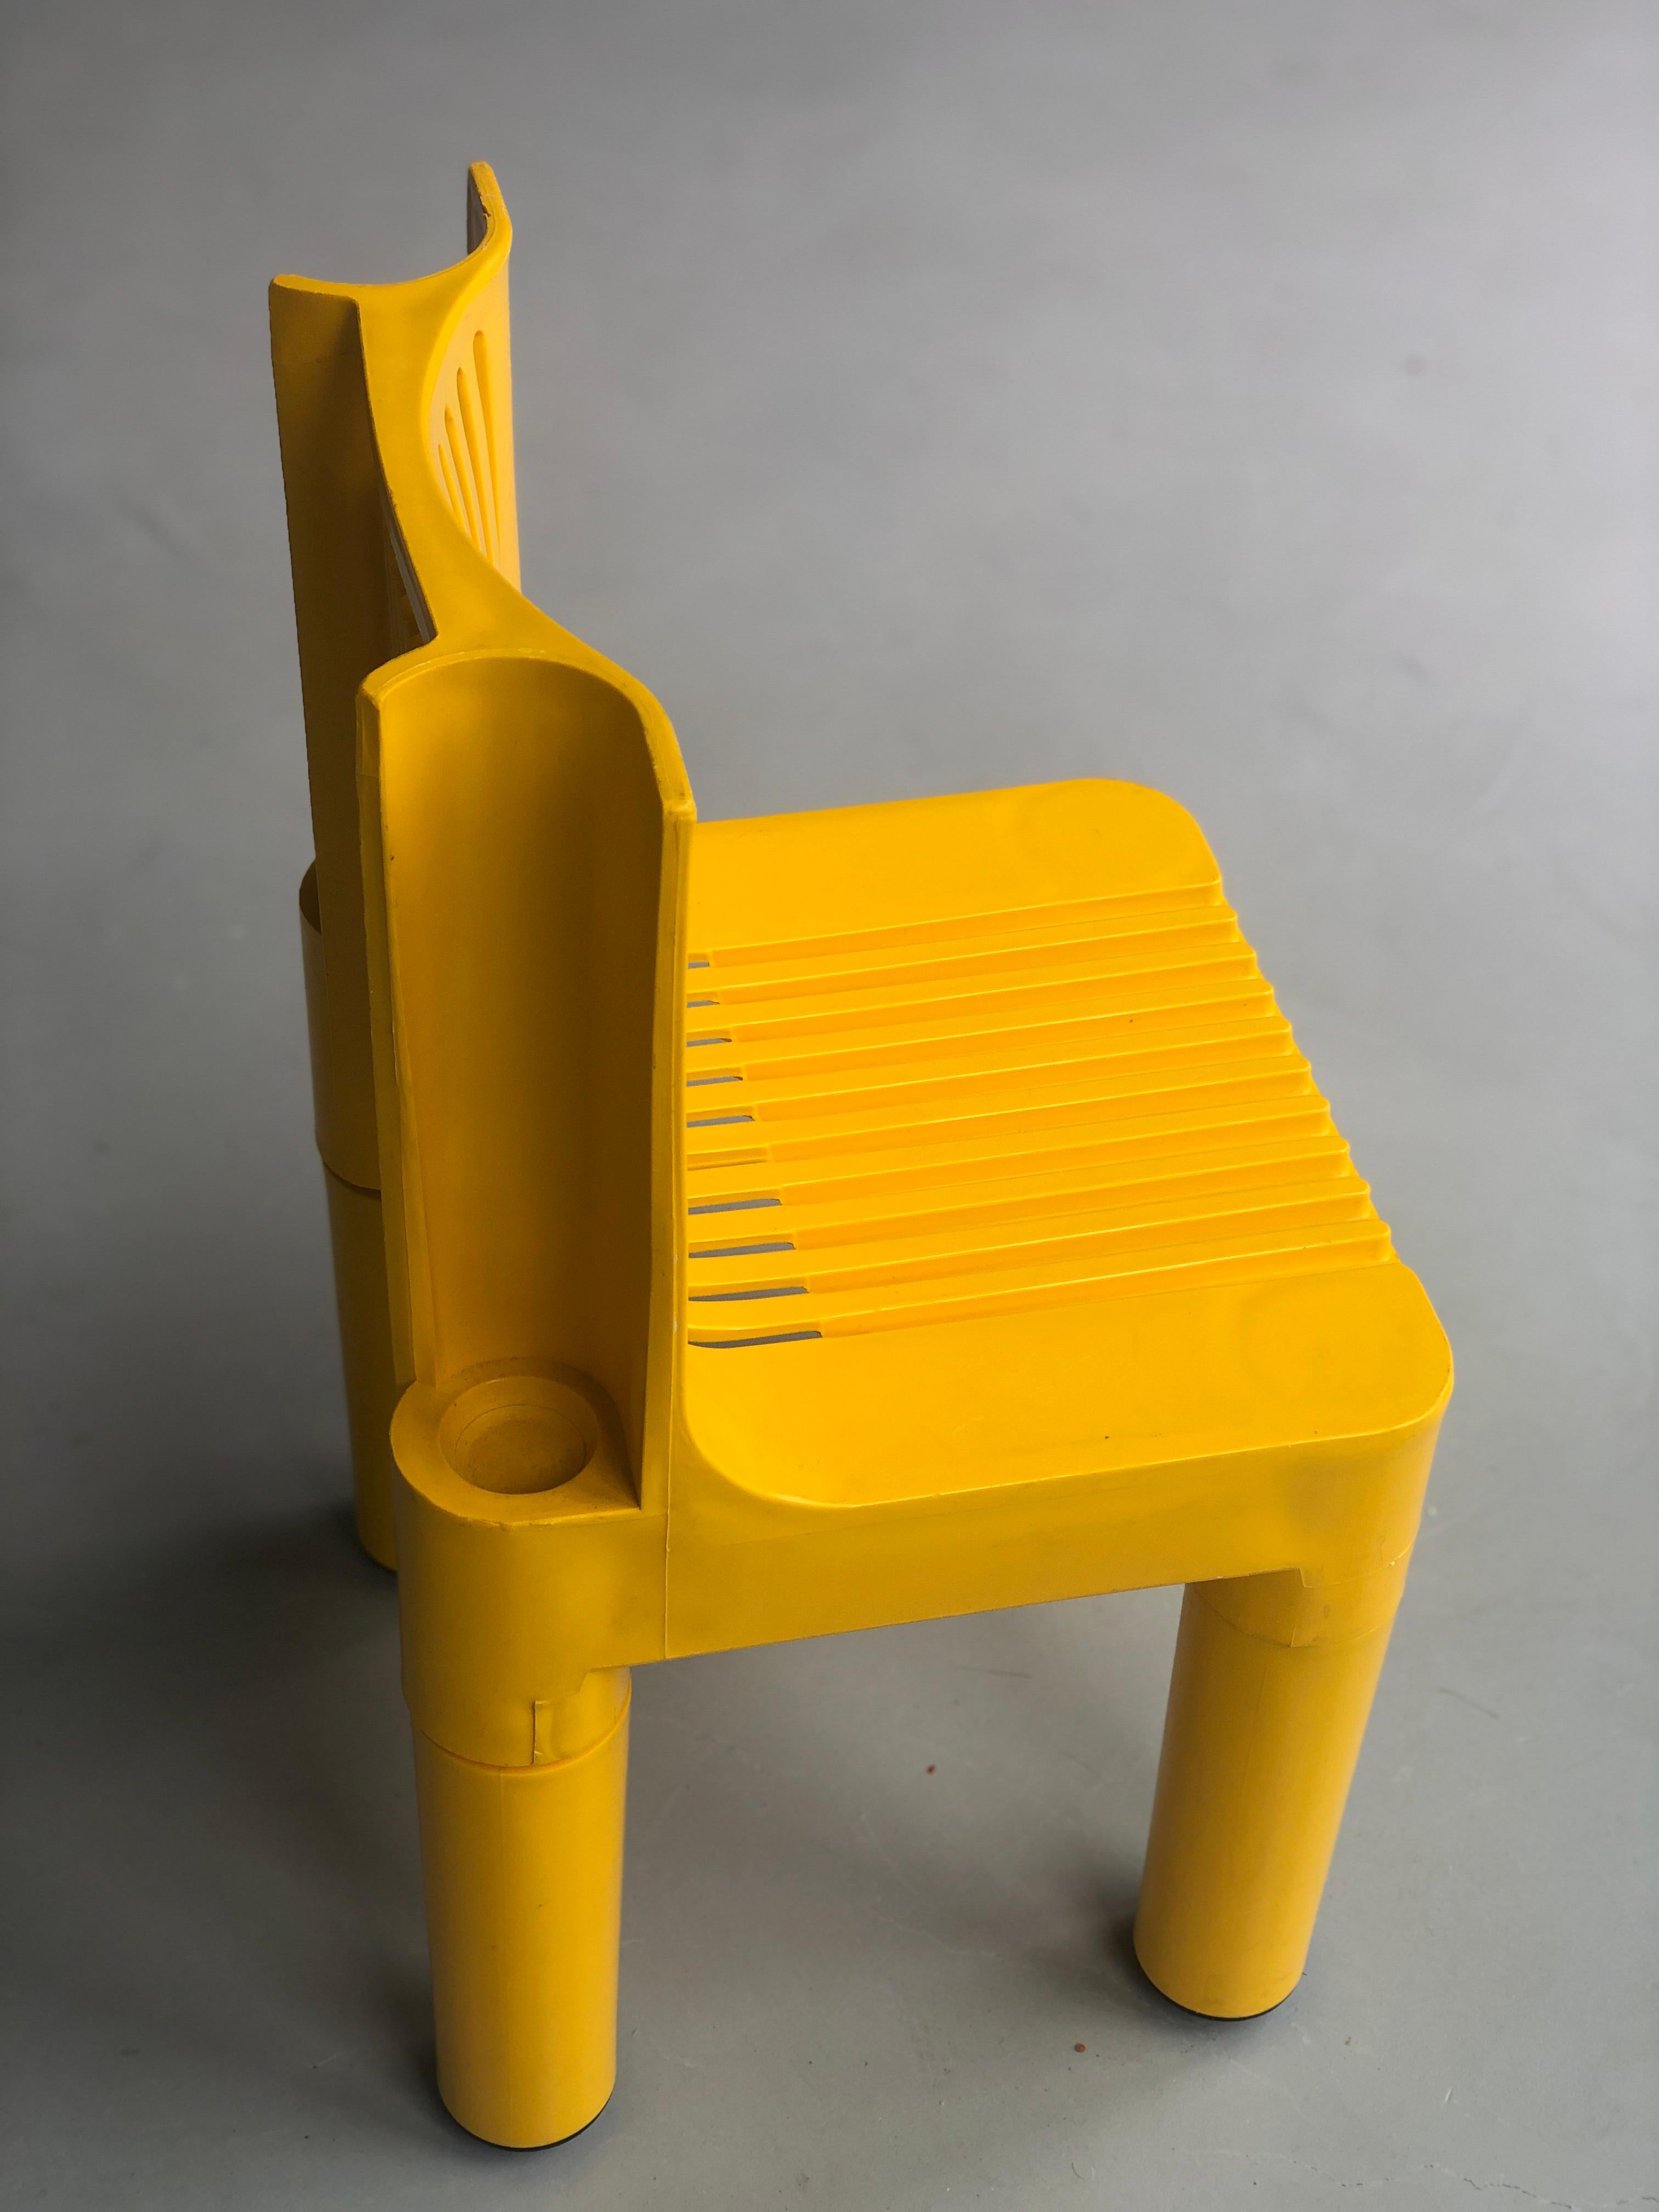 
Kinderstuhl aus Polyethylen K 1340 Kartell - Marco Zanuso & Richard Sapper 1964
Der stapelbare Kinderstuhl K 1340 war der erste Stuhl, der vollständig aus Spritzgusskunststoff hergestellt wurde.
Später wurde dieses Stuhlmodell 4999/5 Kartell